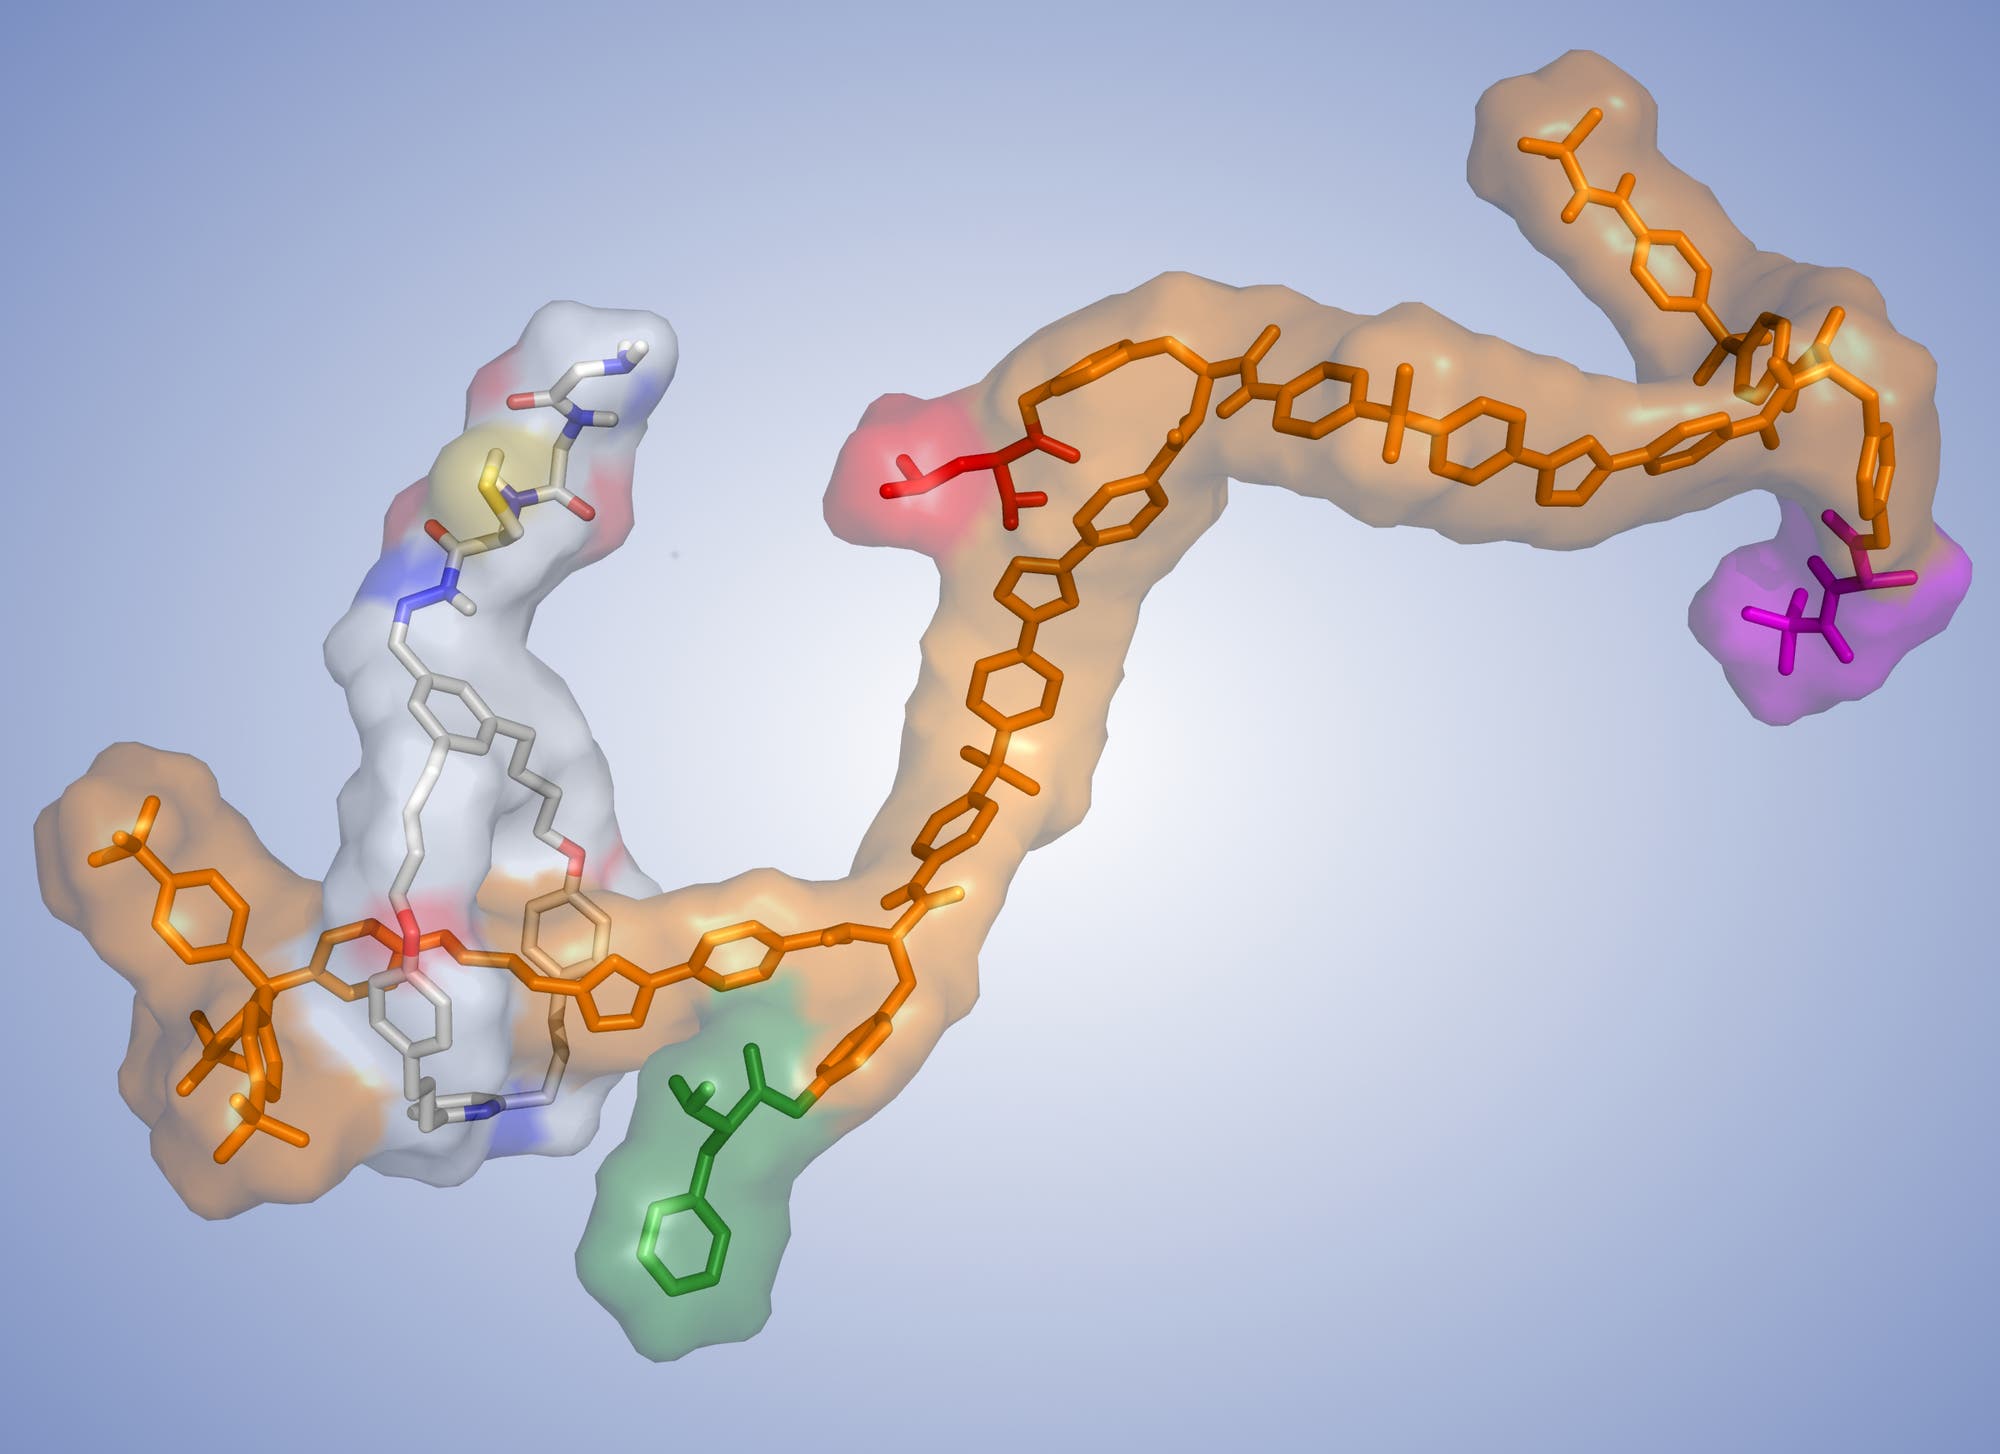 Die chemische Struktur der Molekularen Maschine. Ein Rotaxan.